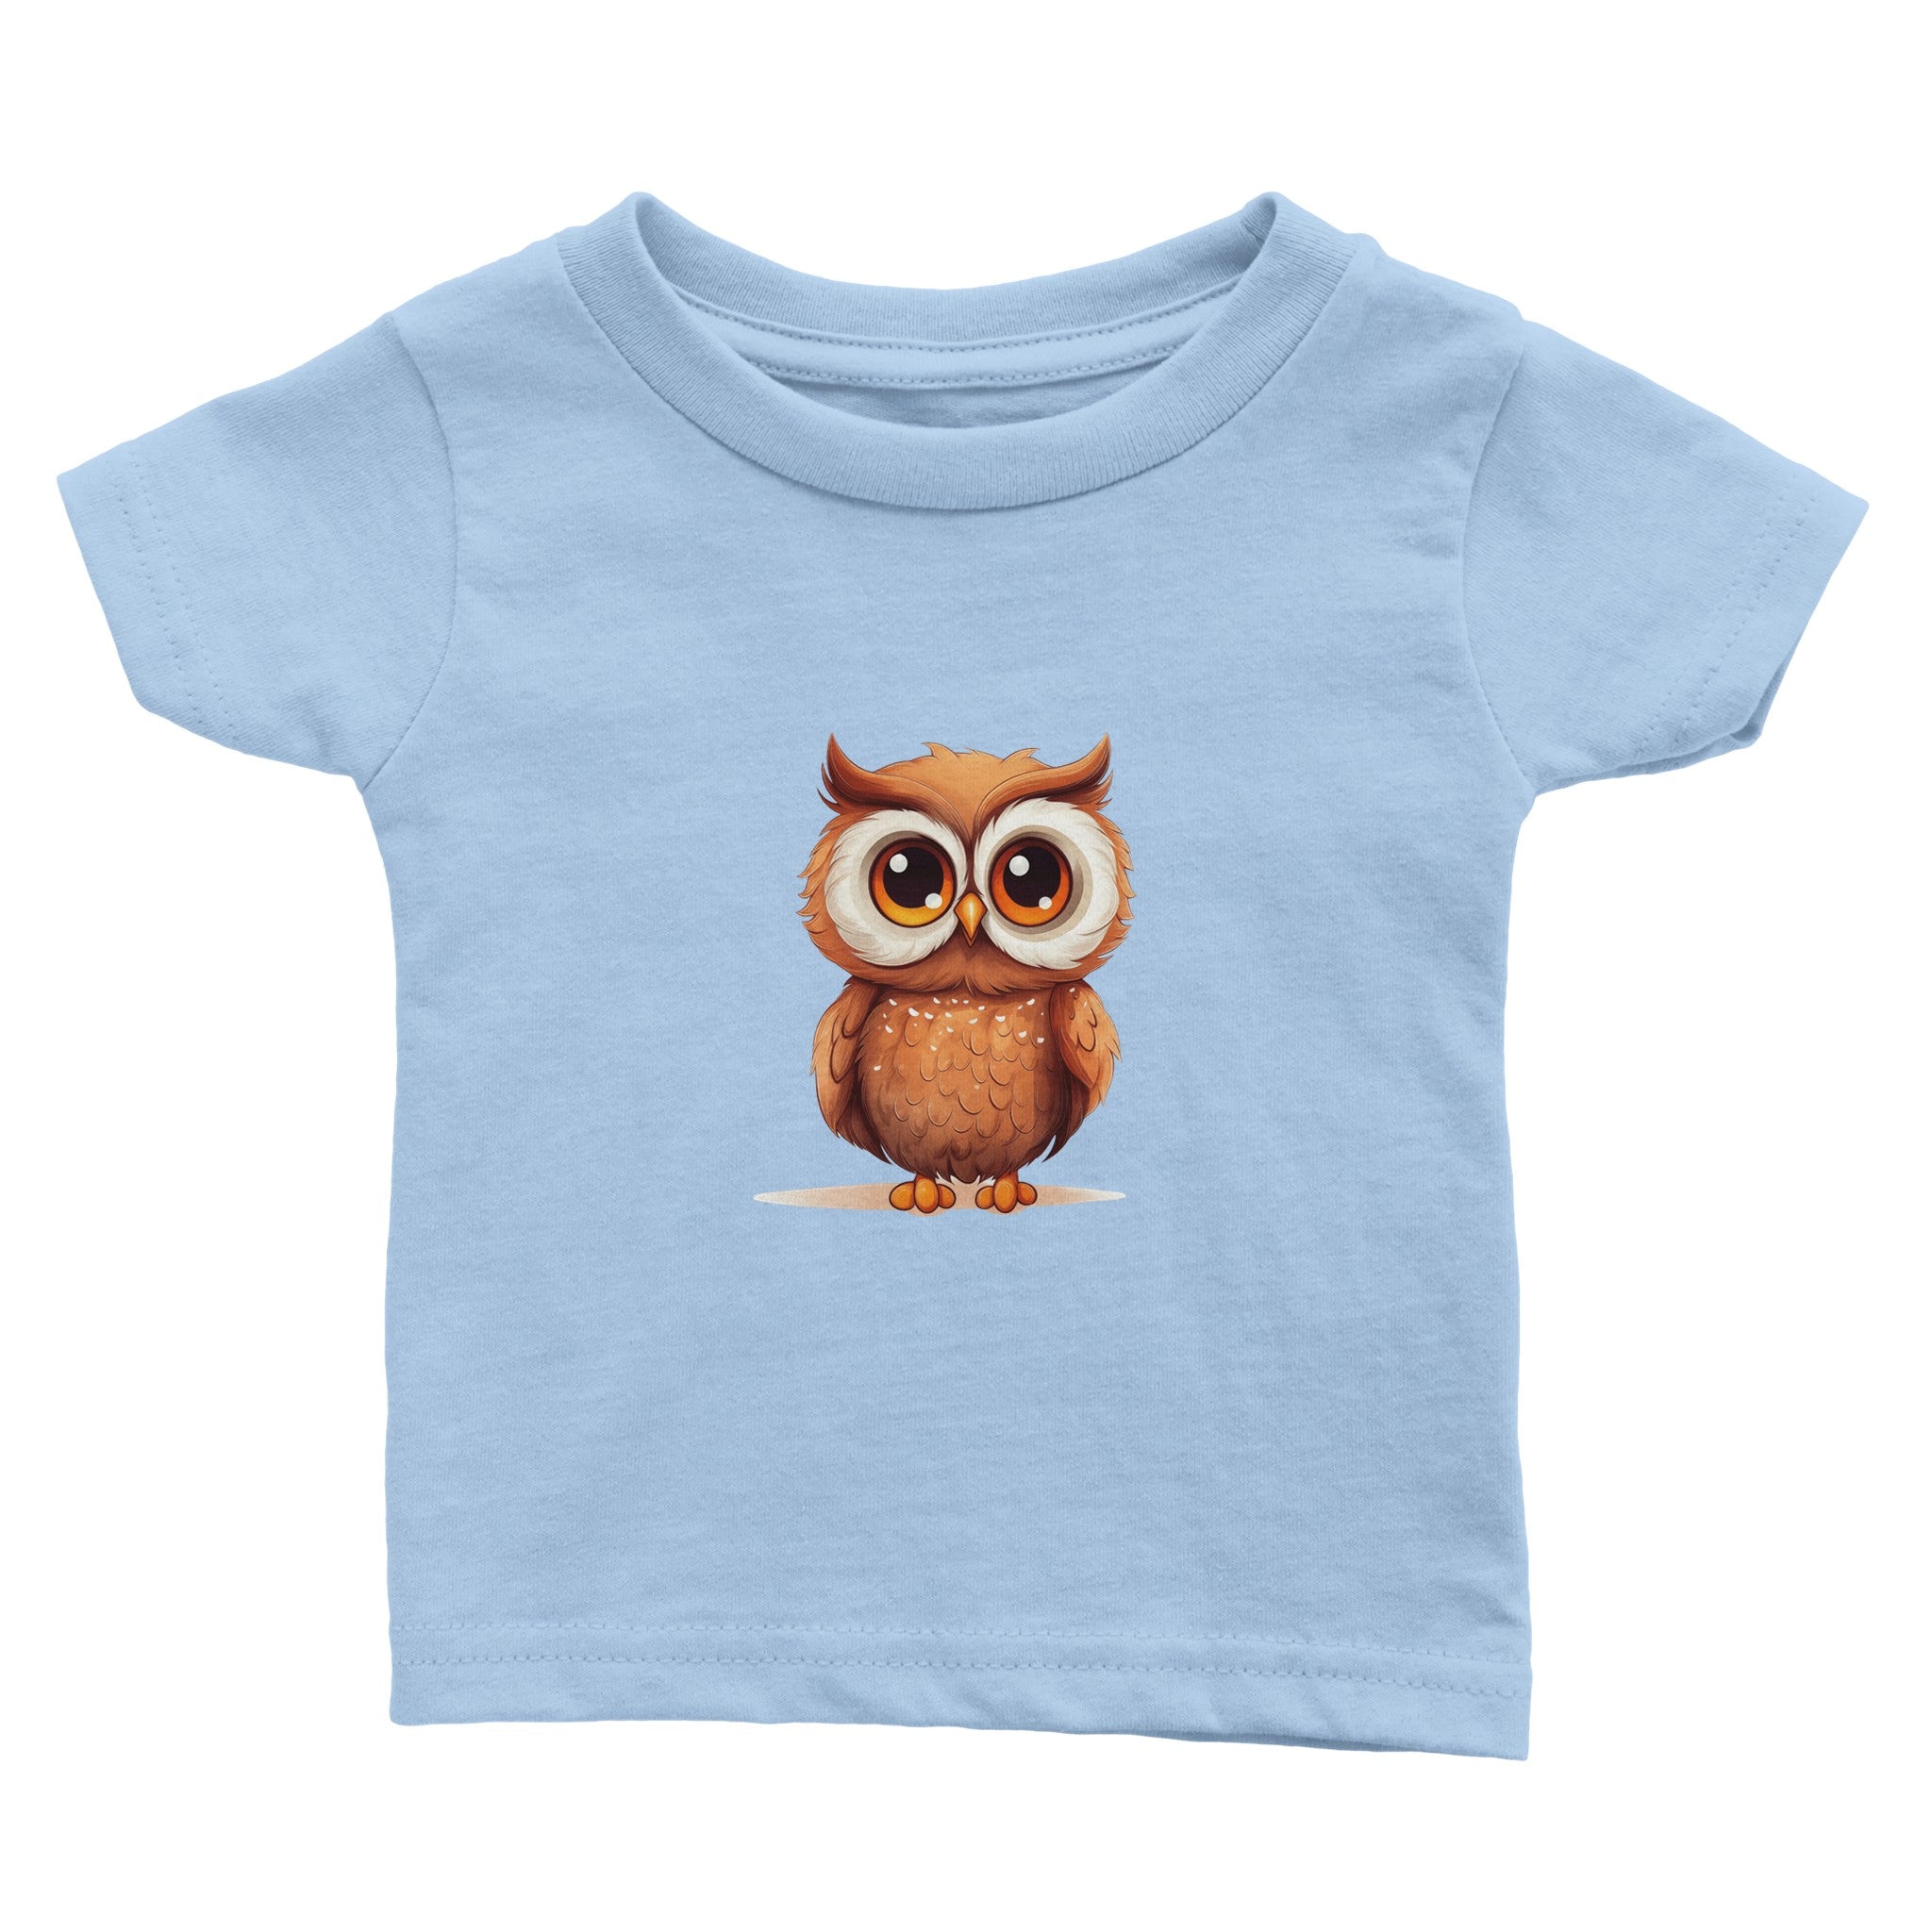 Cuddly Wisdom Watcher Baby Crewneck T-shirt - Optimalprint